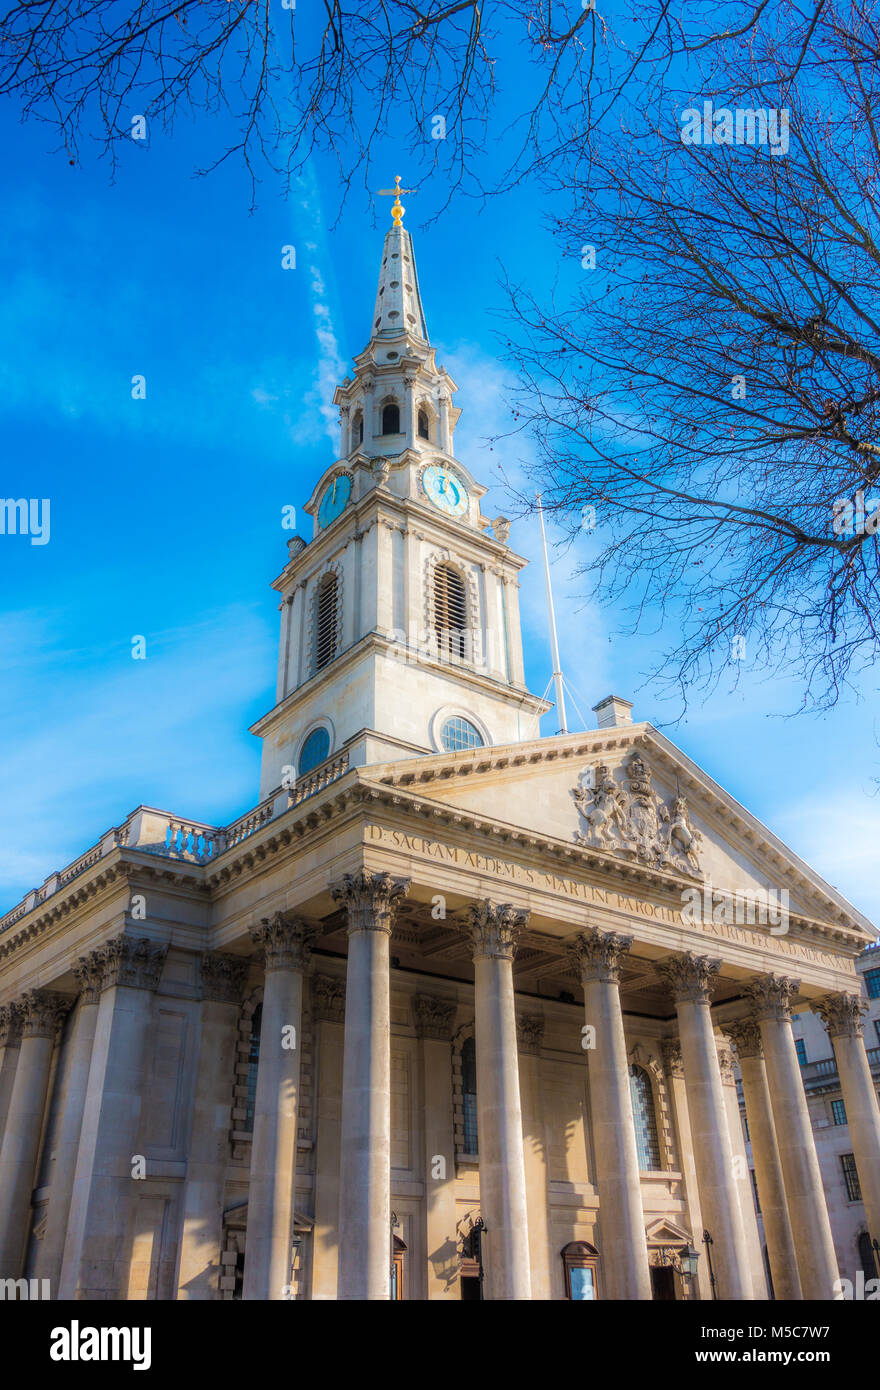 St Martin-in-the-Fields Church. Esterno del grado che ho elencato, XVIII secolo parrocchia anglicana chiesa su Trafalgar Square, Londra, Inghilterra, Regno Unito. Foto Stock